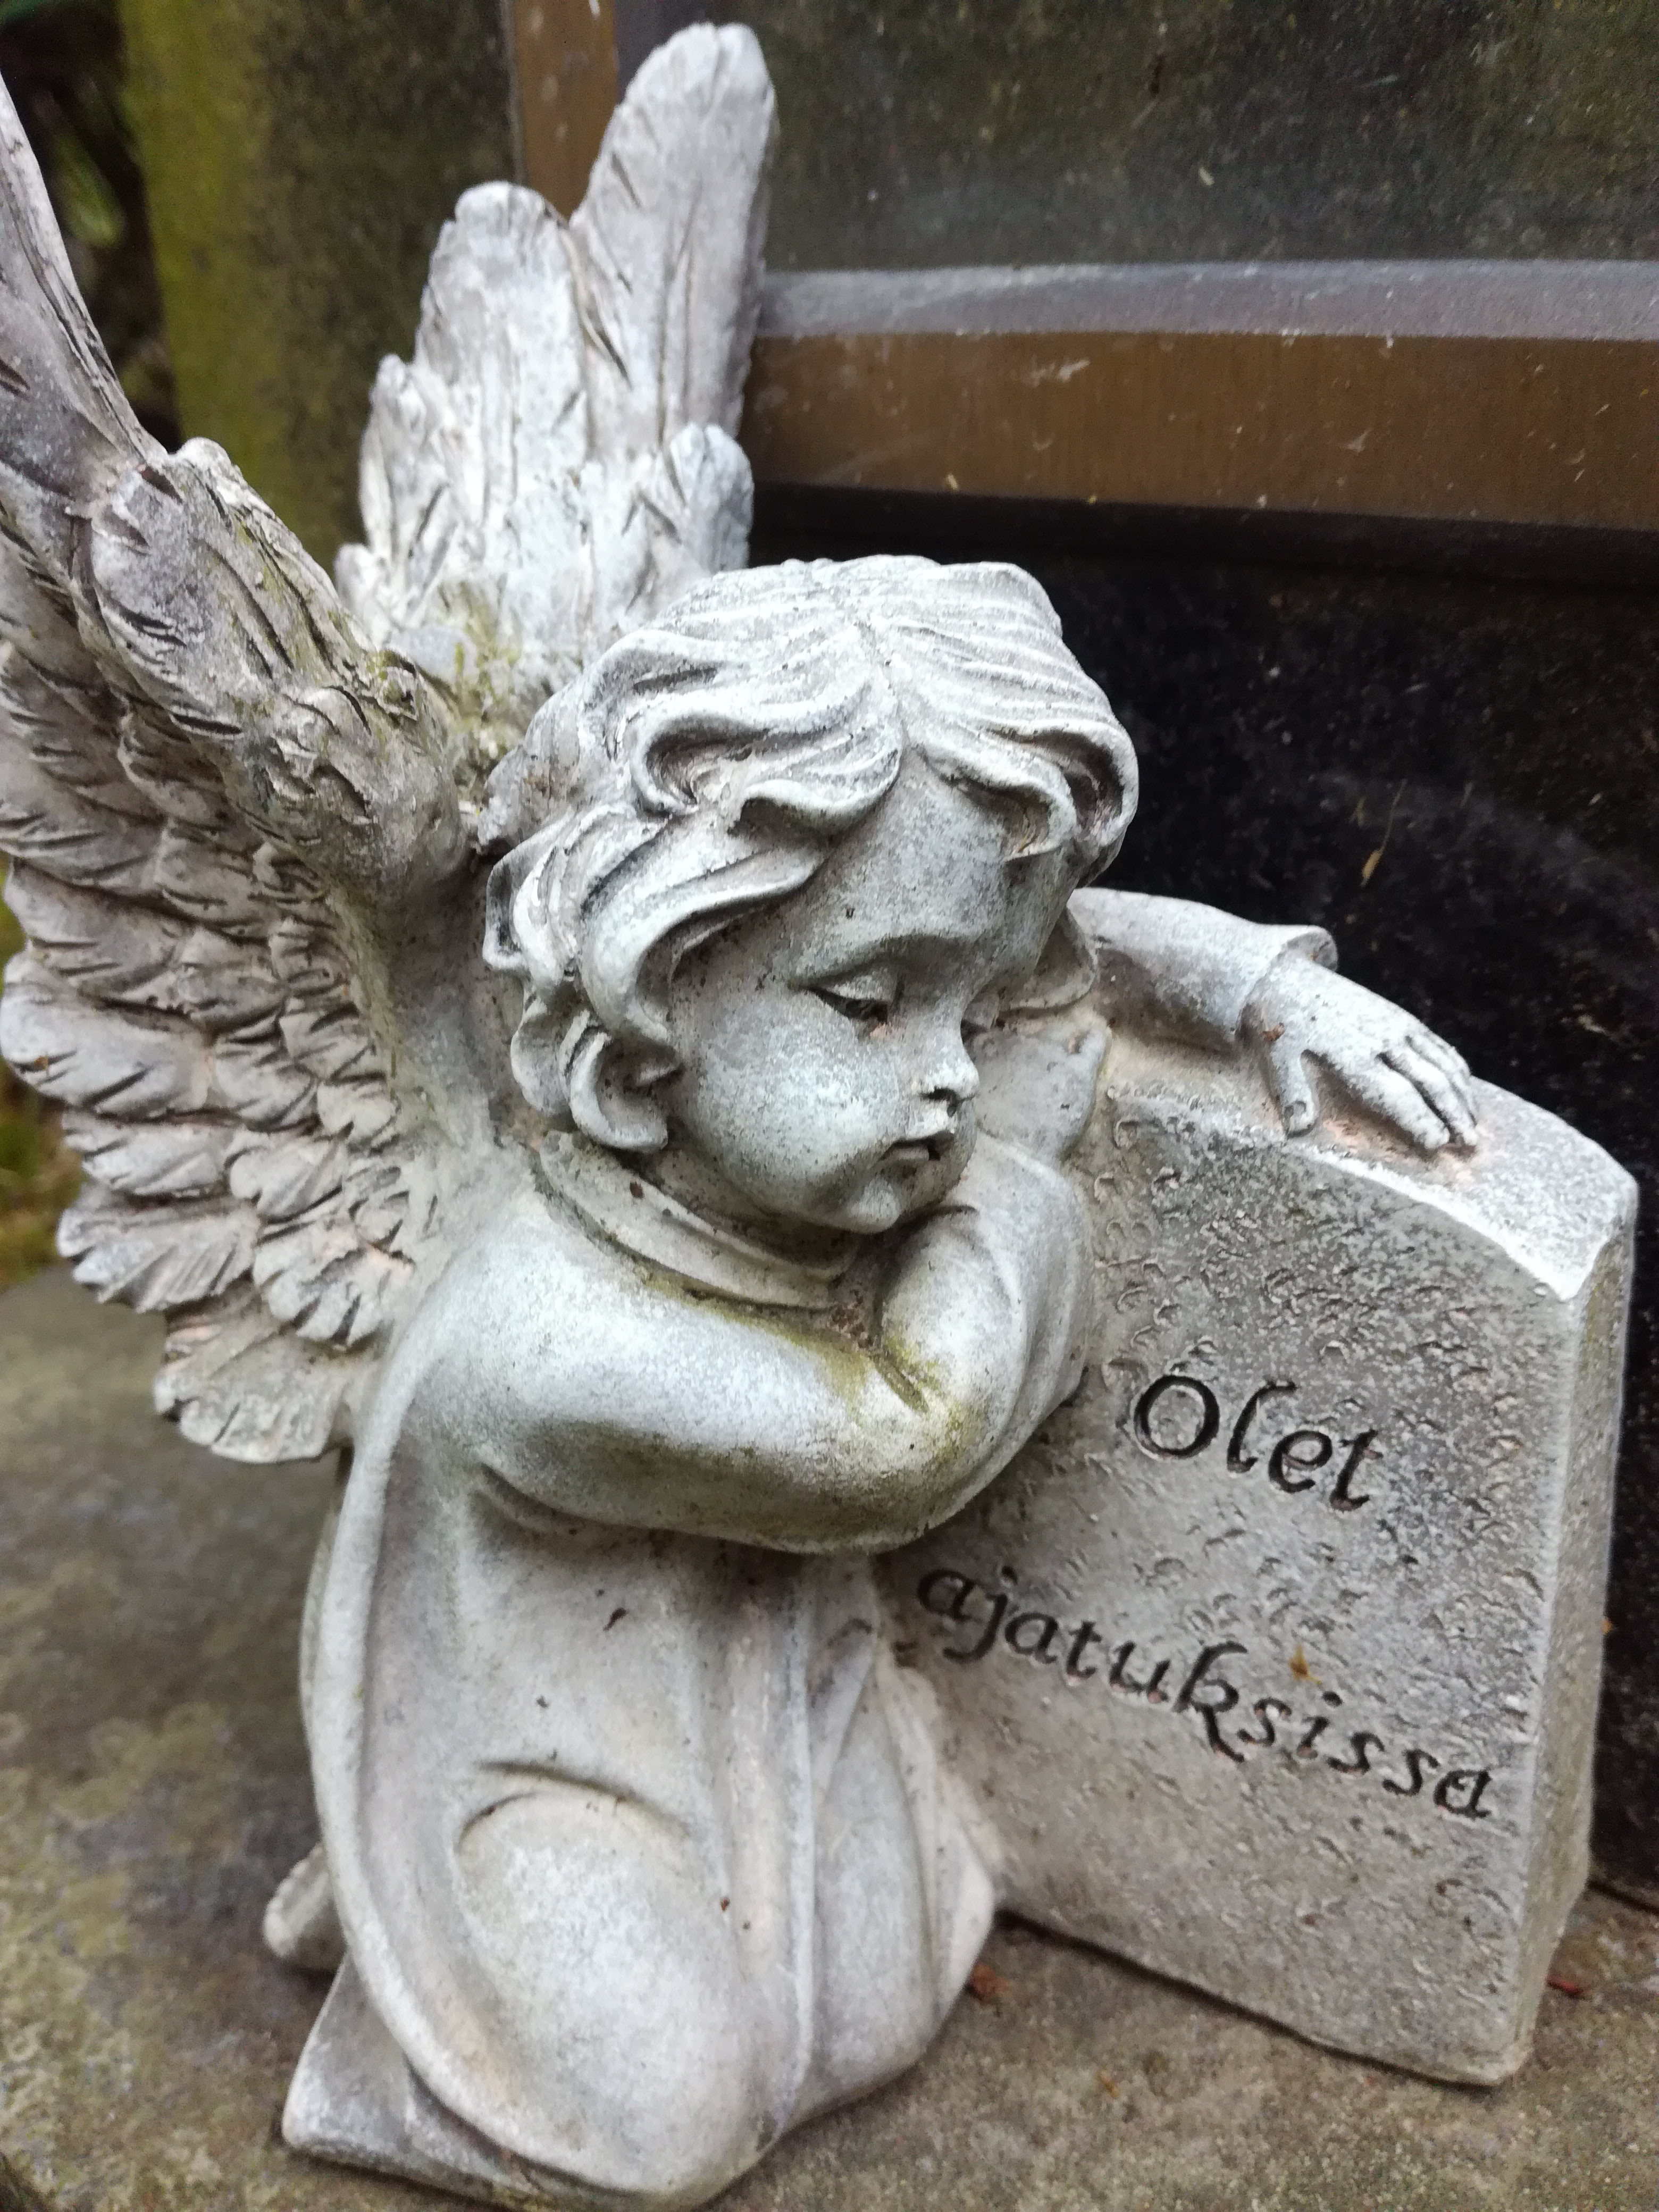 Patsas, jossa enkeli nojaa hautakiveen. Kivessä lukee Olet ajatuksissa.